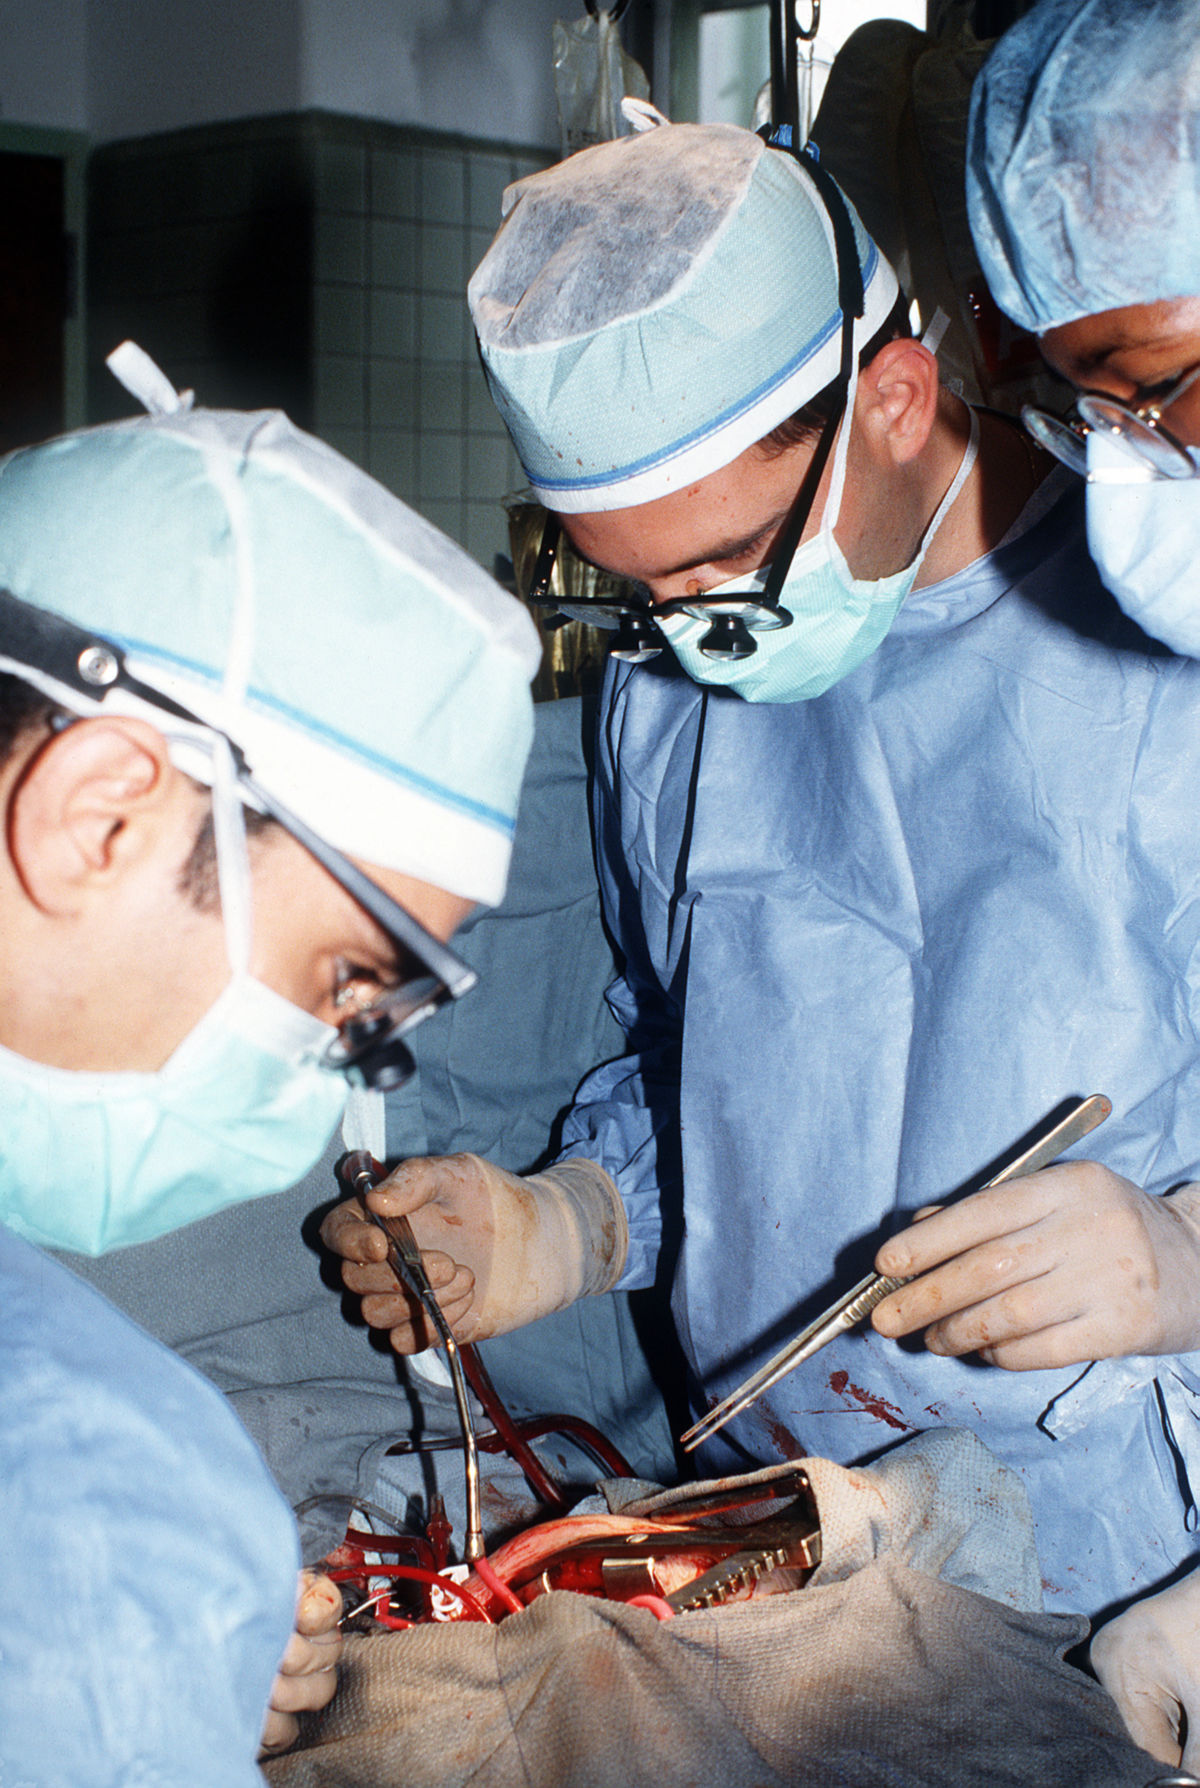 Chirurgen bei Mitralklappenersatz-Operation